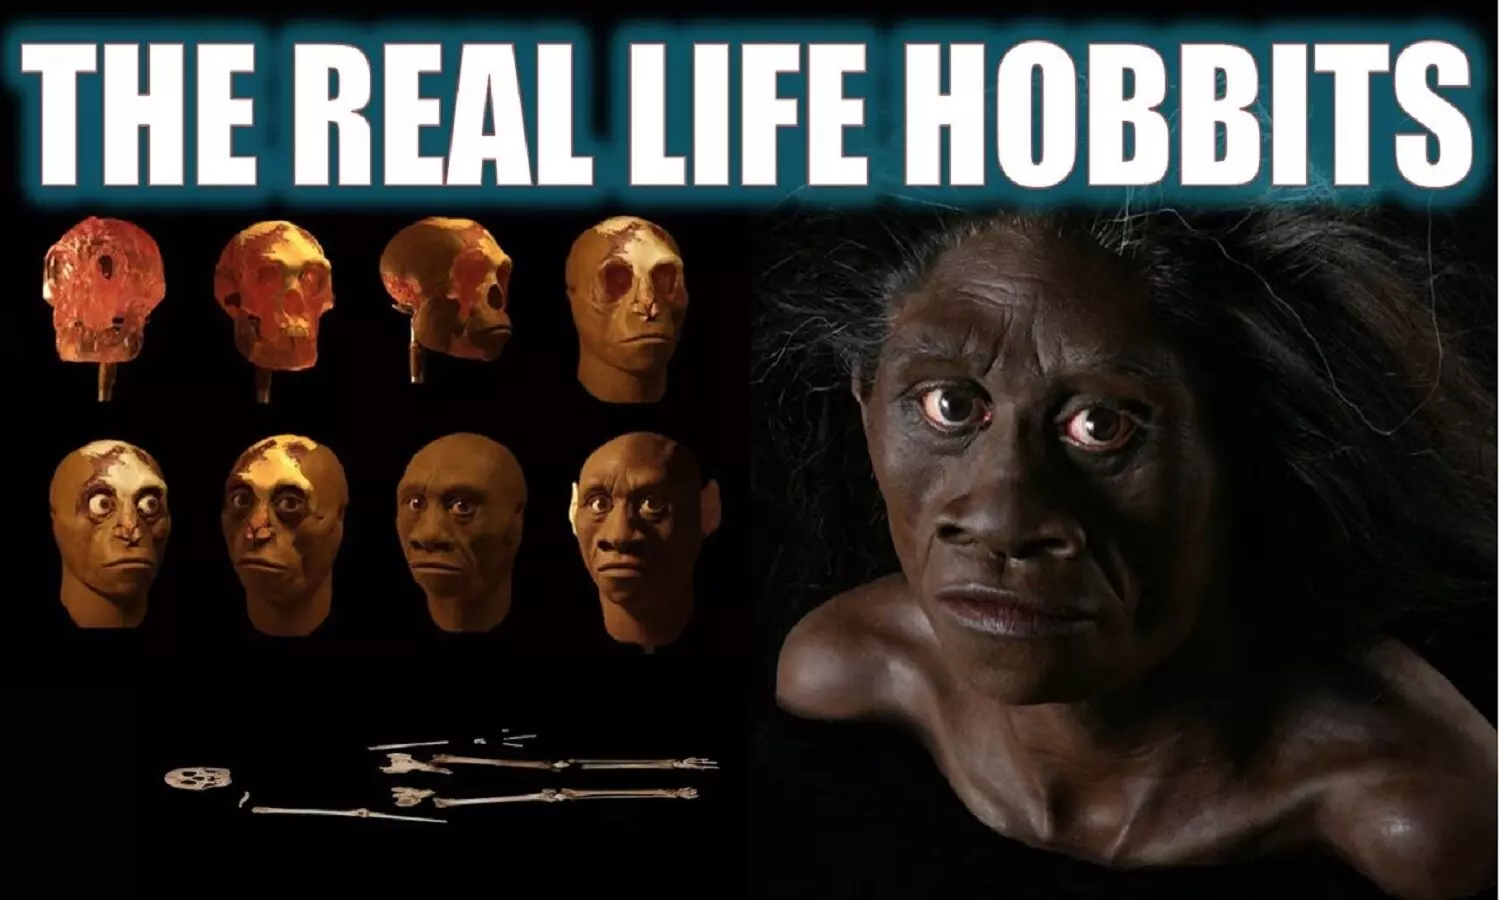 Are There Real Hobbit Humans: दुनिया में हम अकेले इंसान नहीं है, ह्यूमंस की दूसरी प्रजाति आज भी जिंदा है